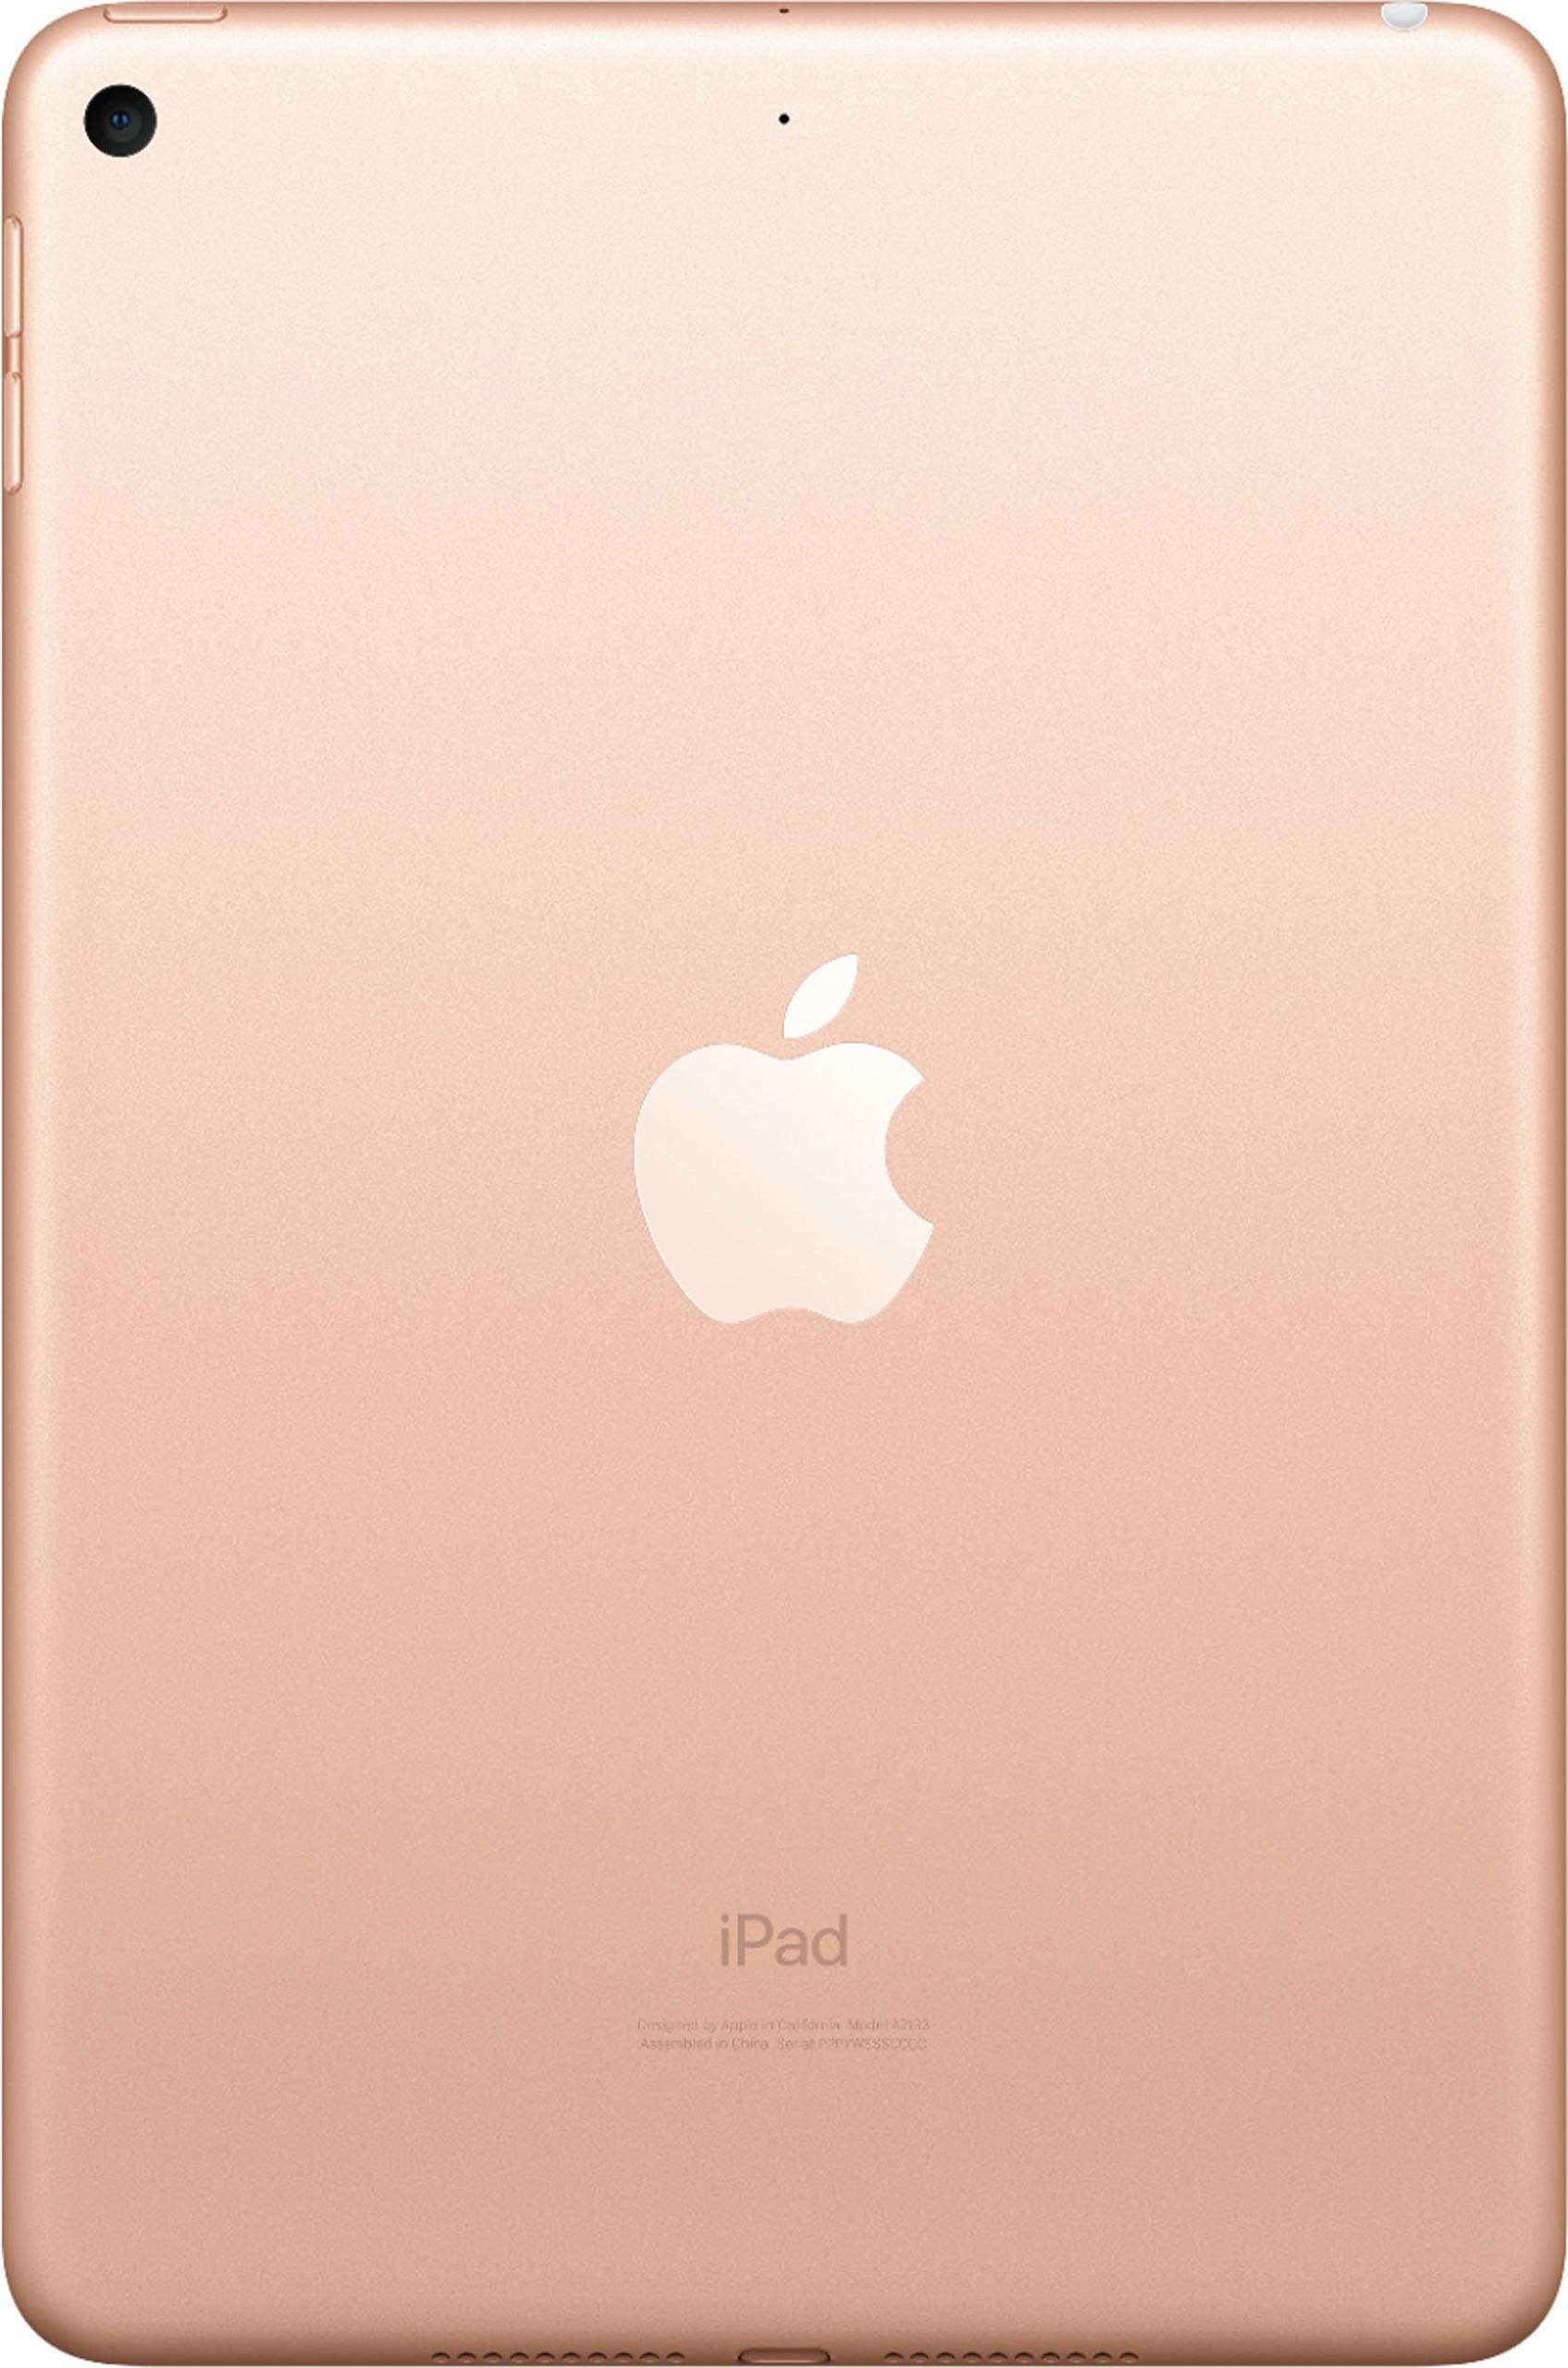 Apple iPad mini 5th Generation, Wi-Fi, 256GB - Gold (Renewed)